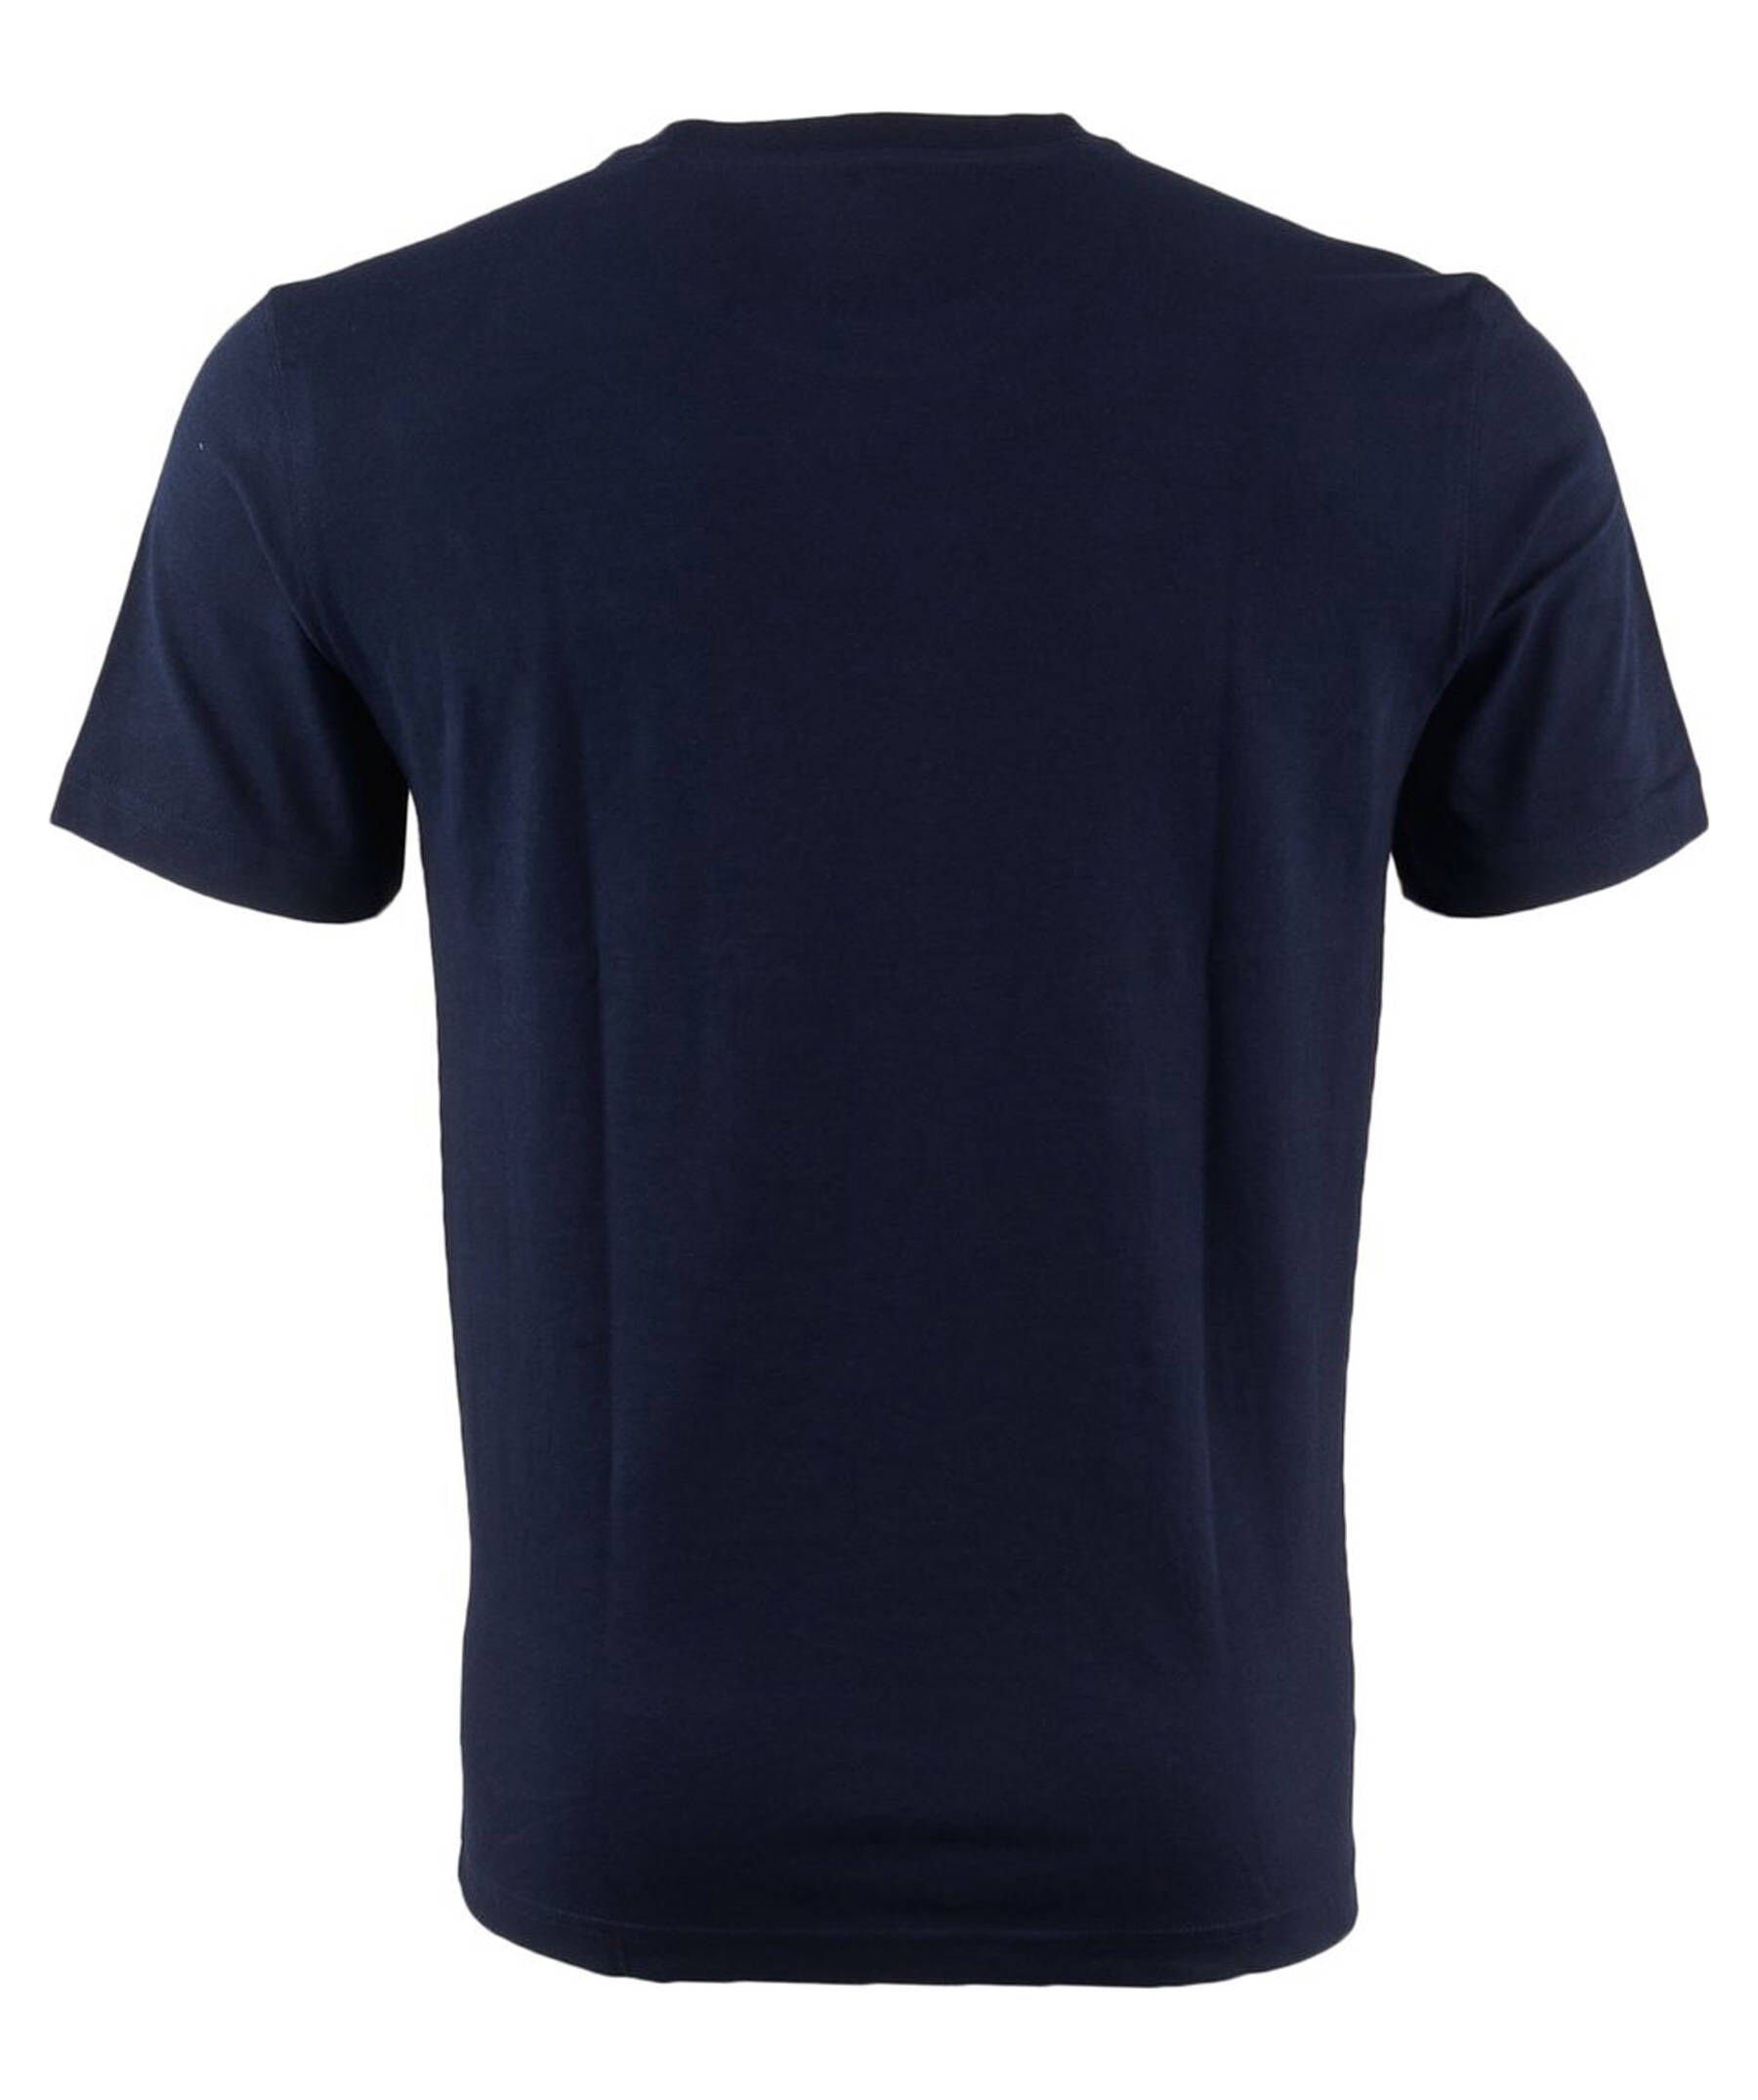 Lacoste TEE-SHIRT Tennisshirt Herren Tennisshirt (300) Sport marine